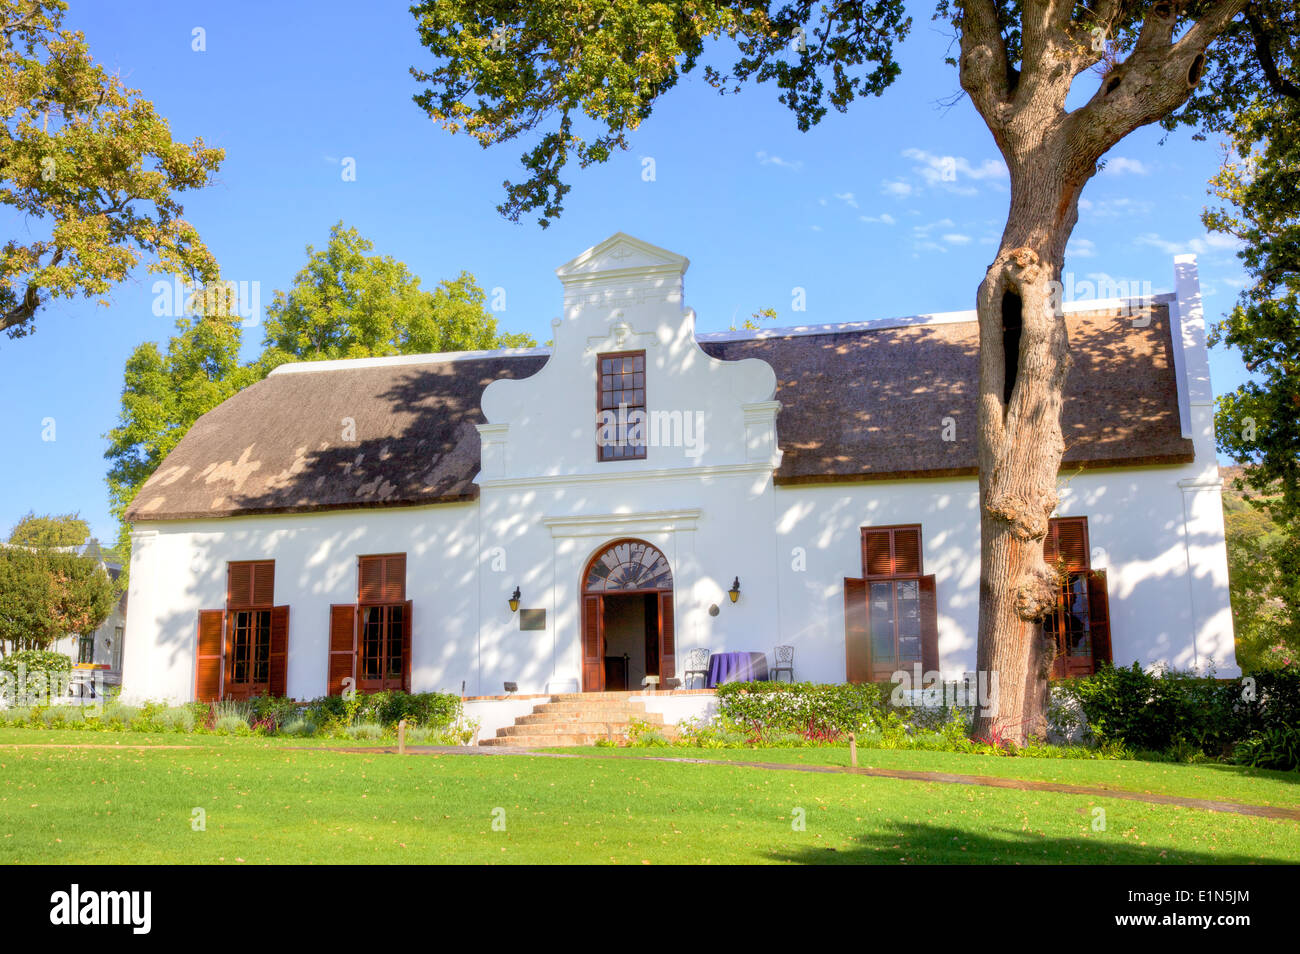 Laborie è considerata la più importante casa in un senso architettonico in Paarl area del Western Cape in Sud Africa. Foto Stock